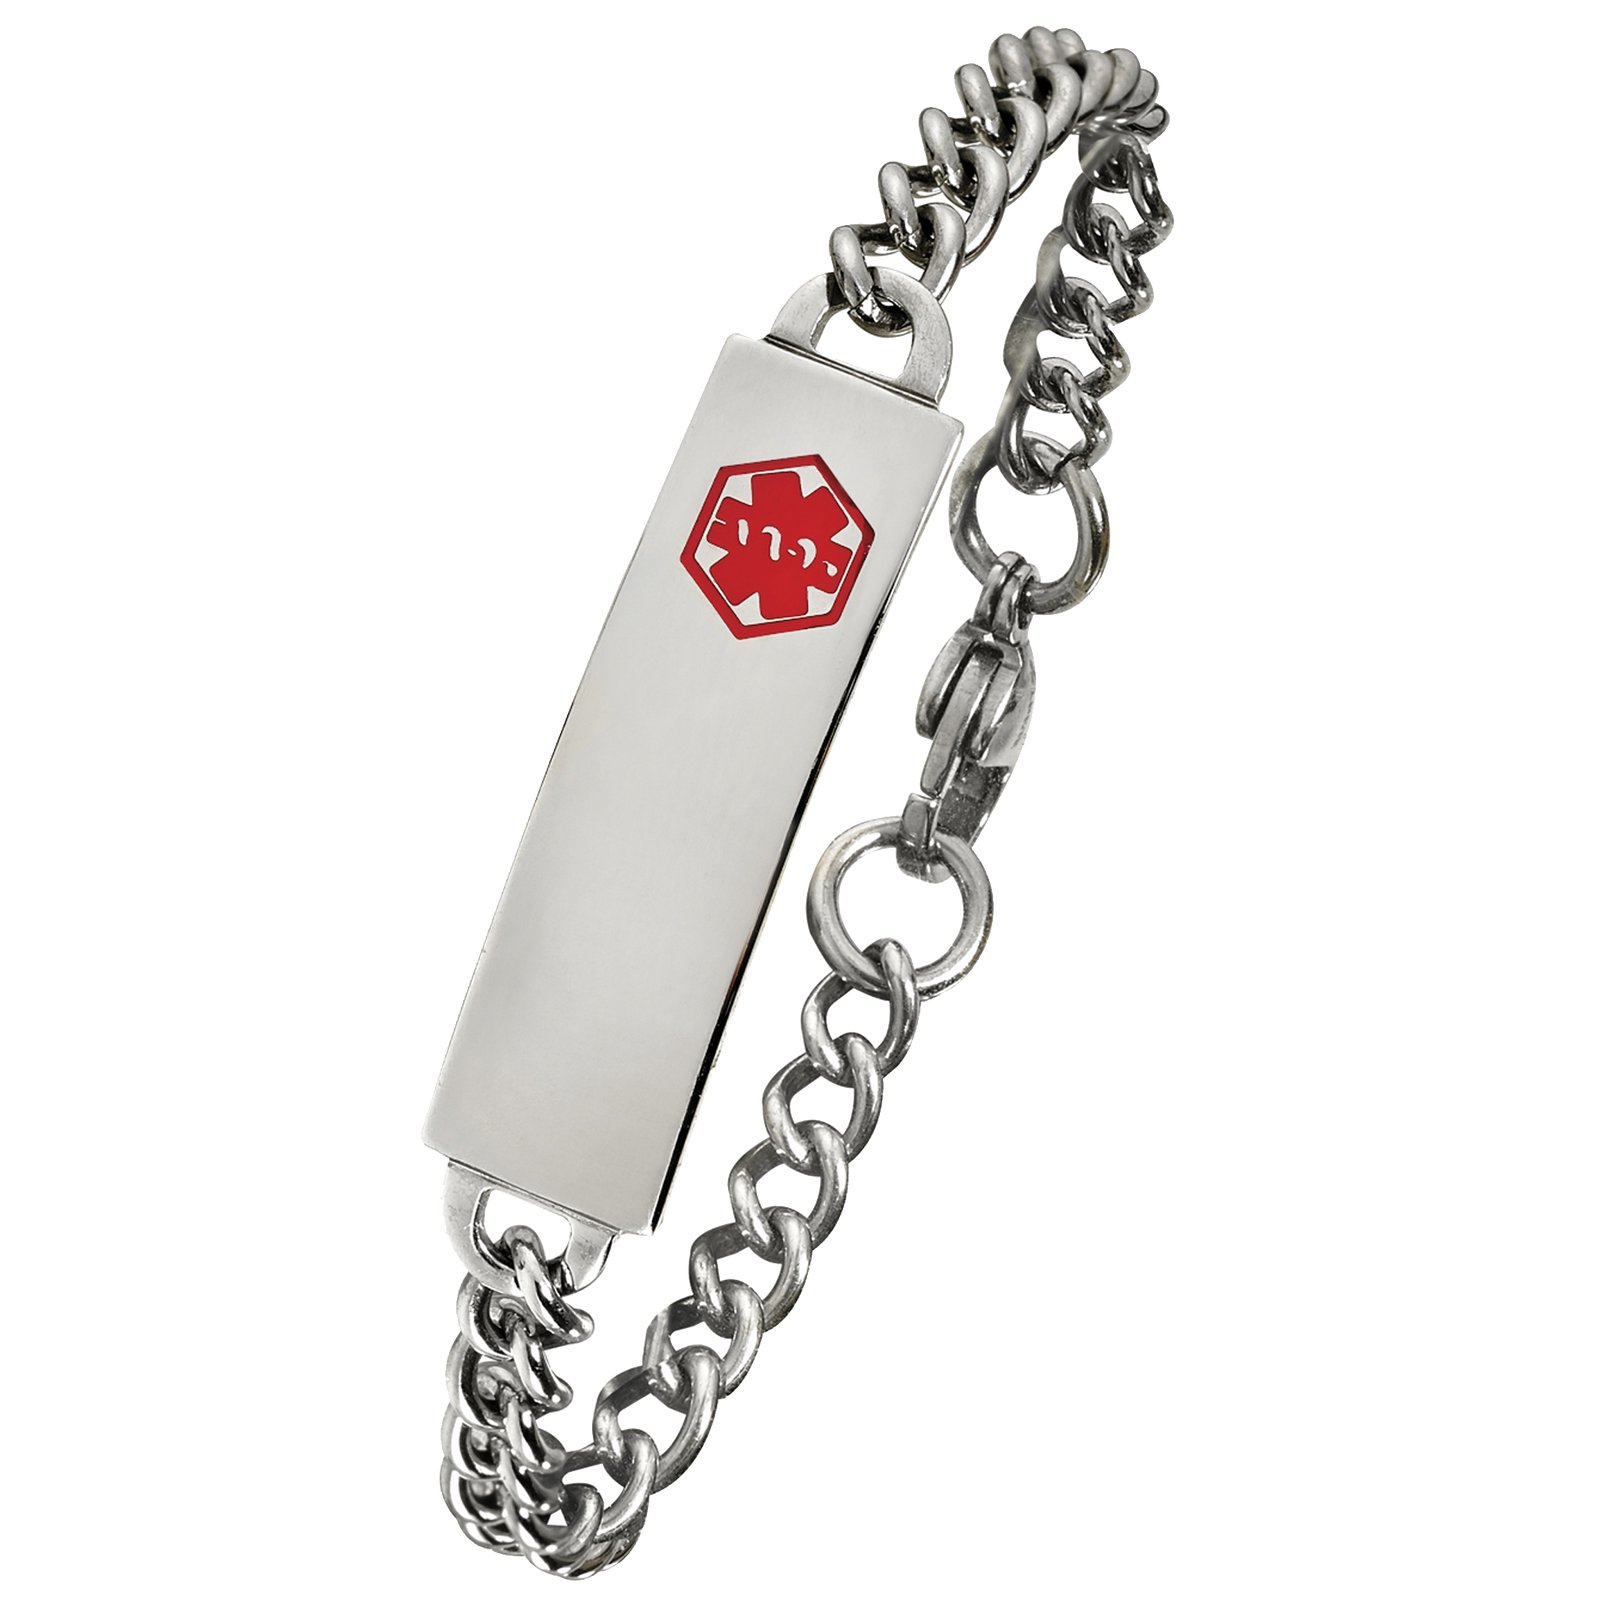 Men's Engraved Medical ID Stretch Bracelet With Insert | Medical jewelry,  Alert bracelet, Bracelets for men